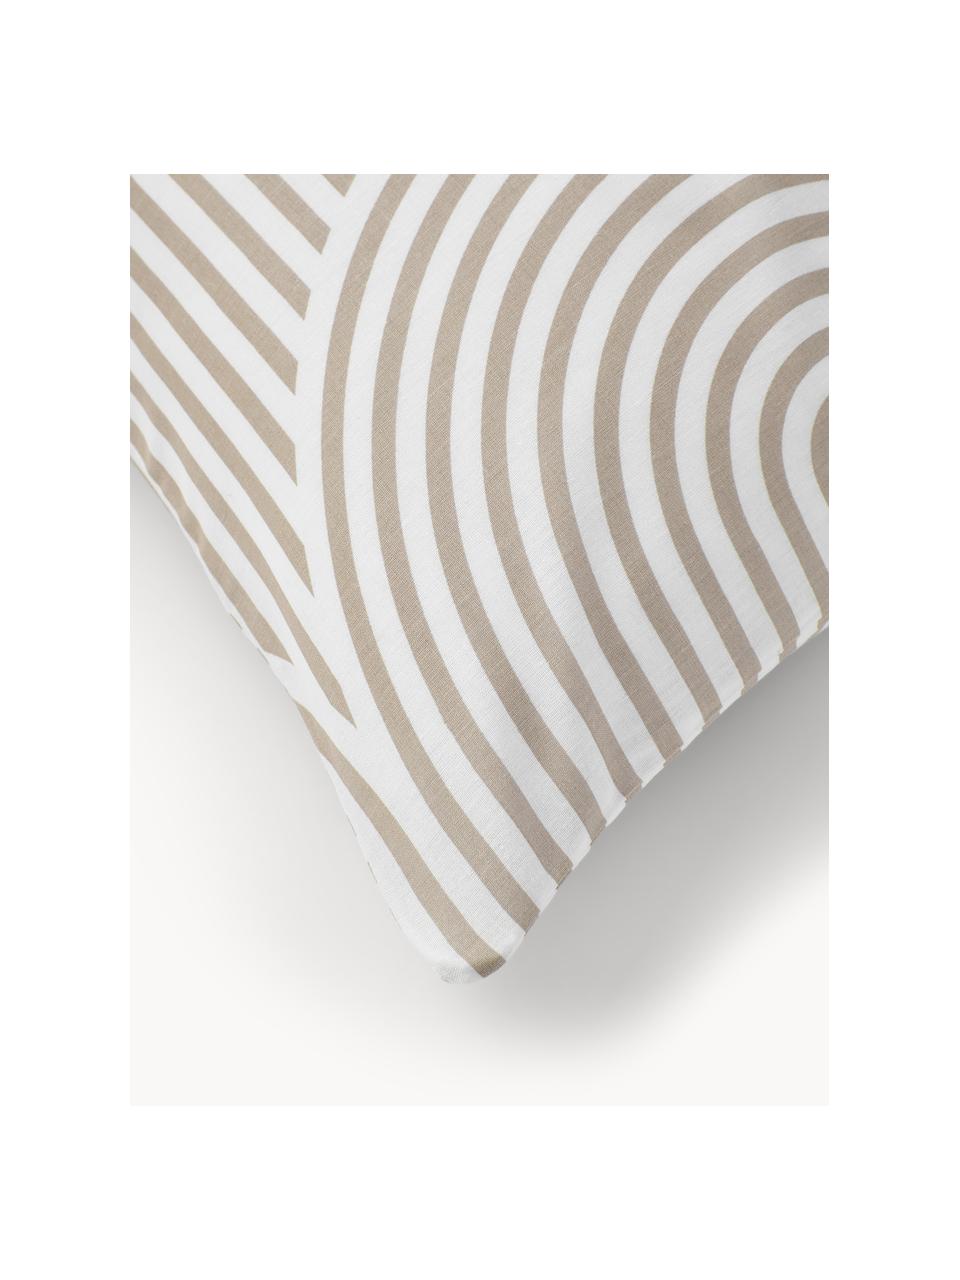 Taie d'oreiller en coton Arcs, Beige, blanc, larg. 50 x long. 70 cm